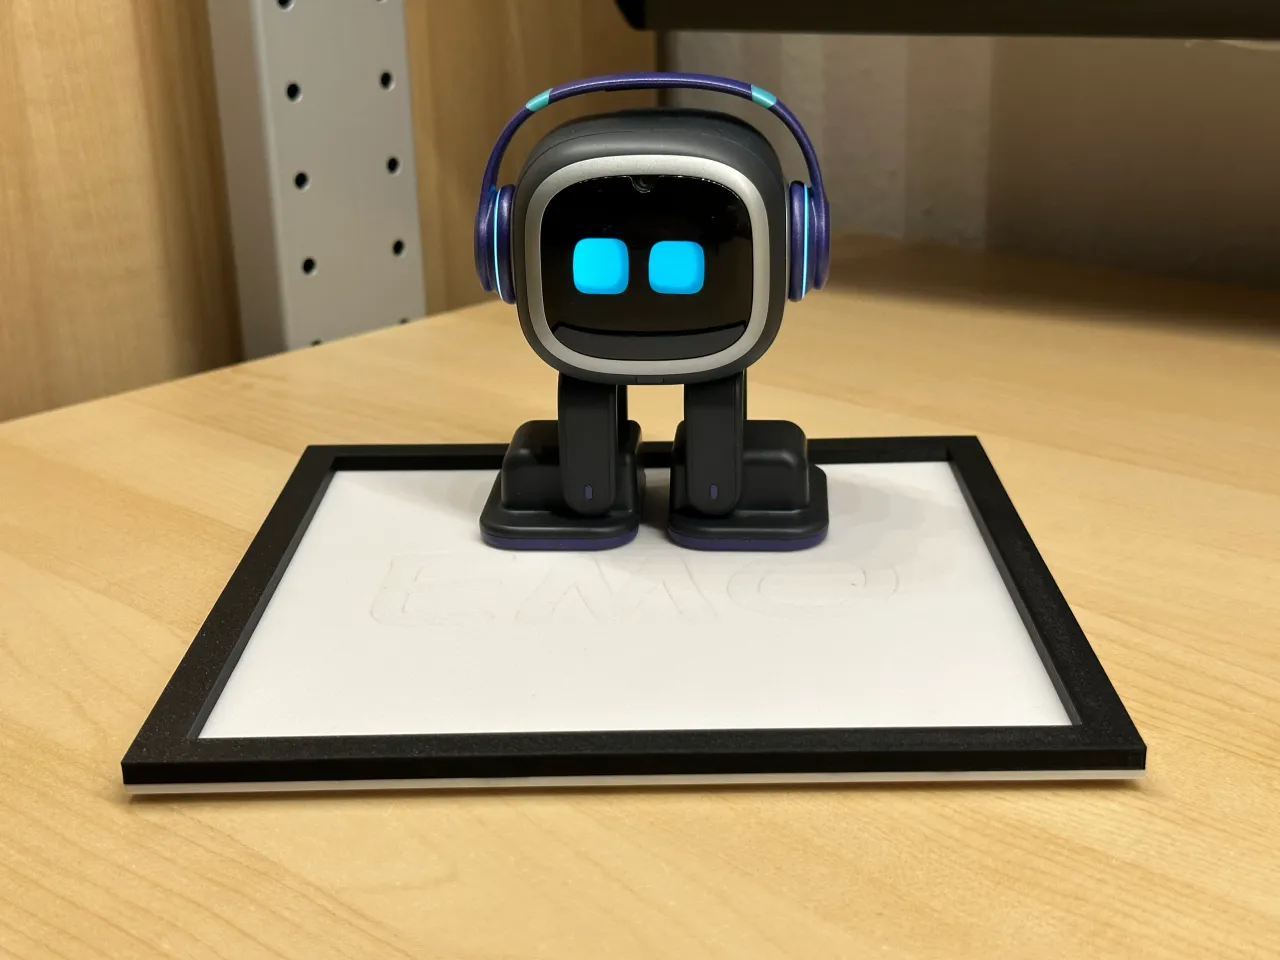 EMO robot walking pad by AWSW, Download free STL model